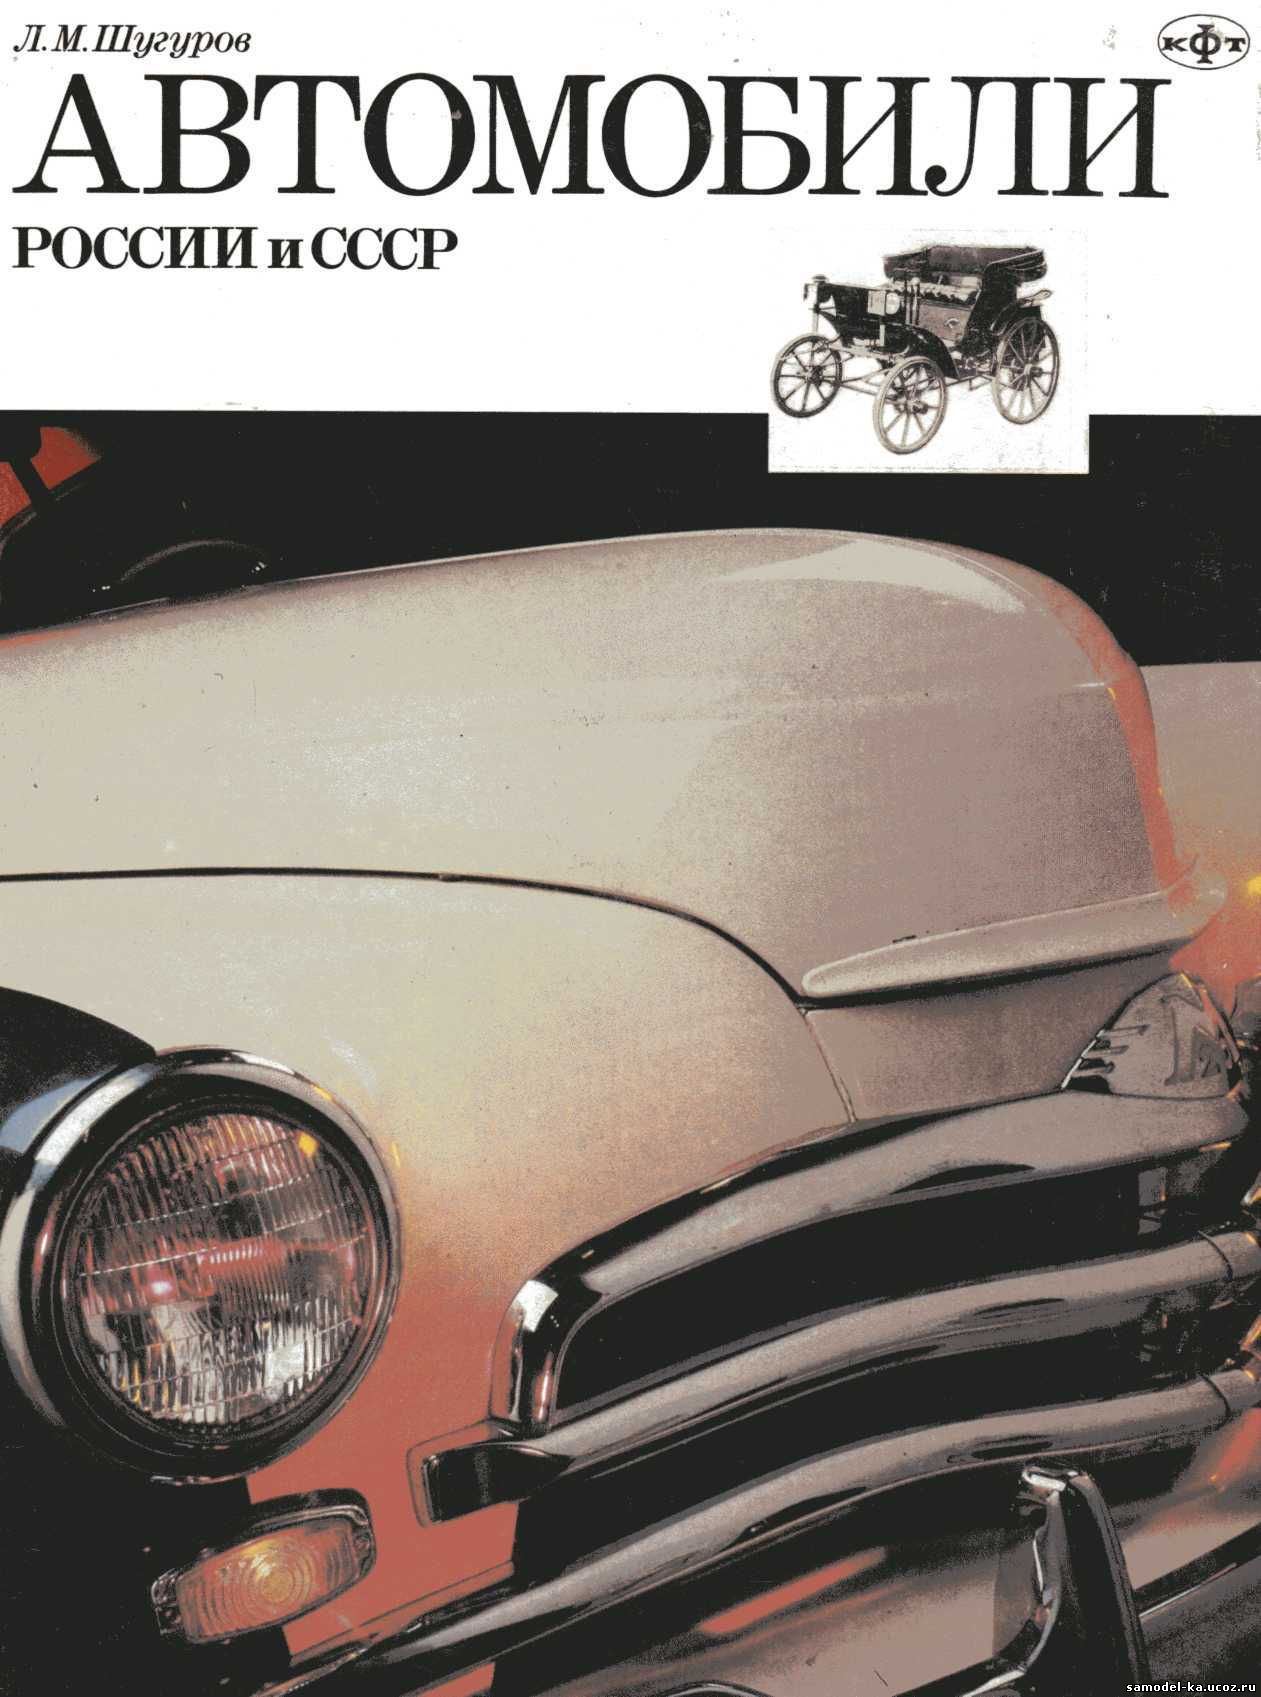 Автомобили России и СССР. Ч.2 (1994) Л.М. Шугуров